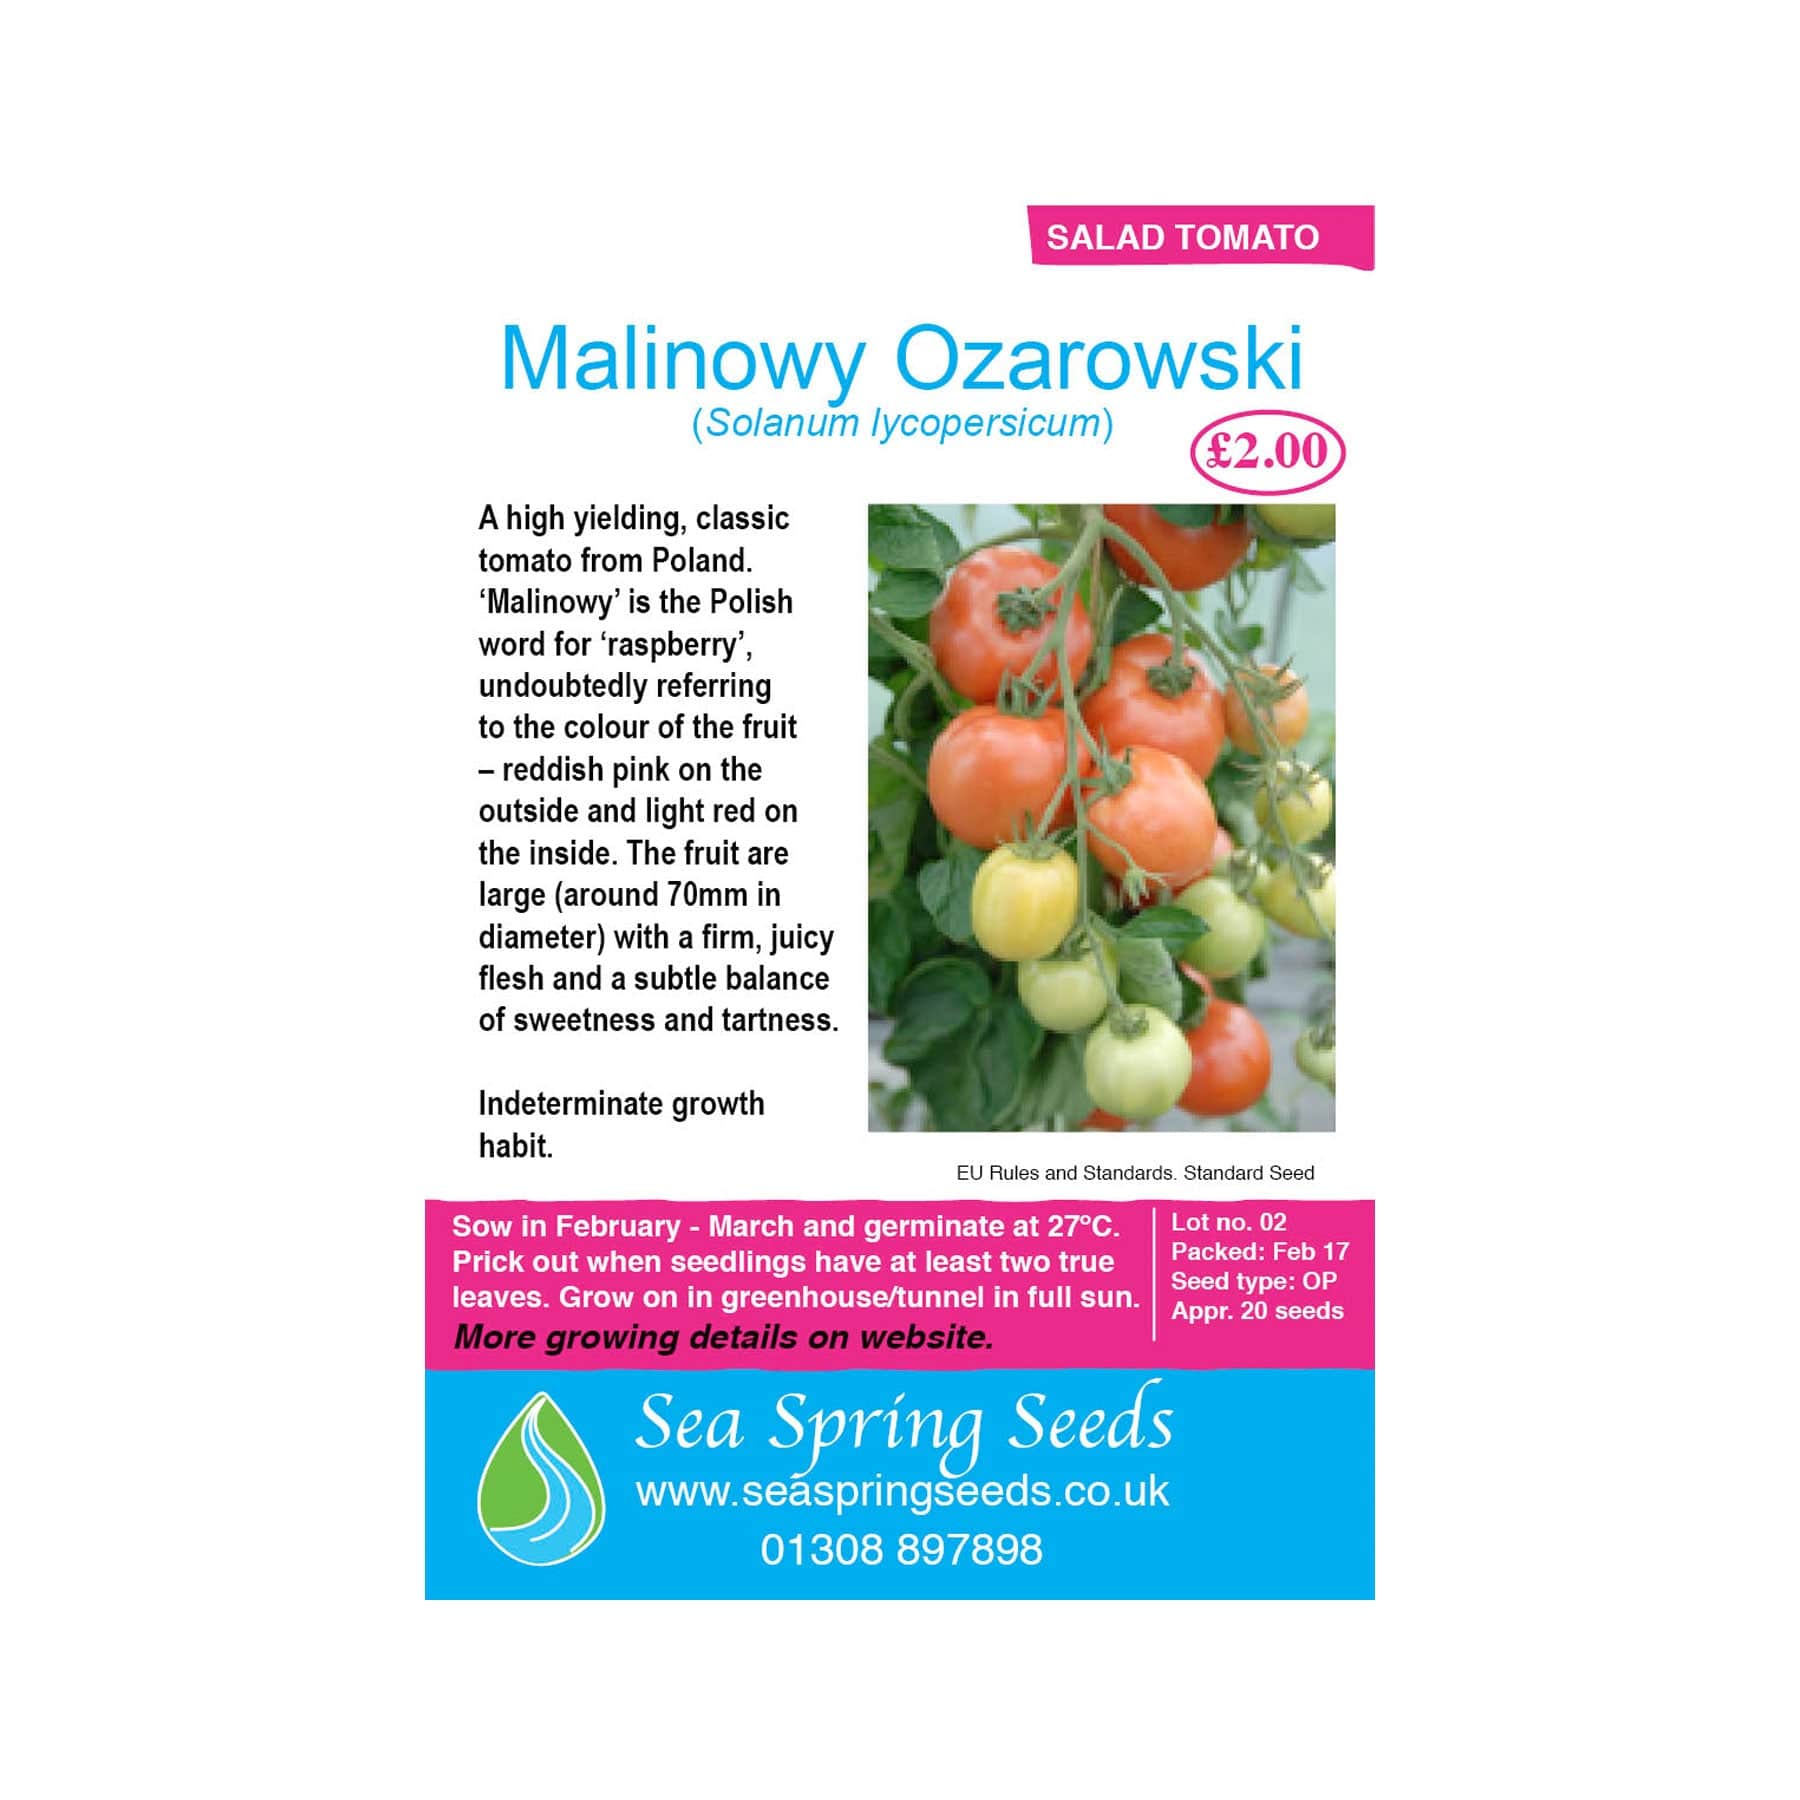 Malinowy ozarowski tomato seeds